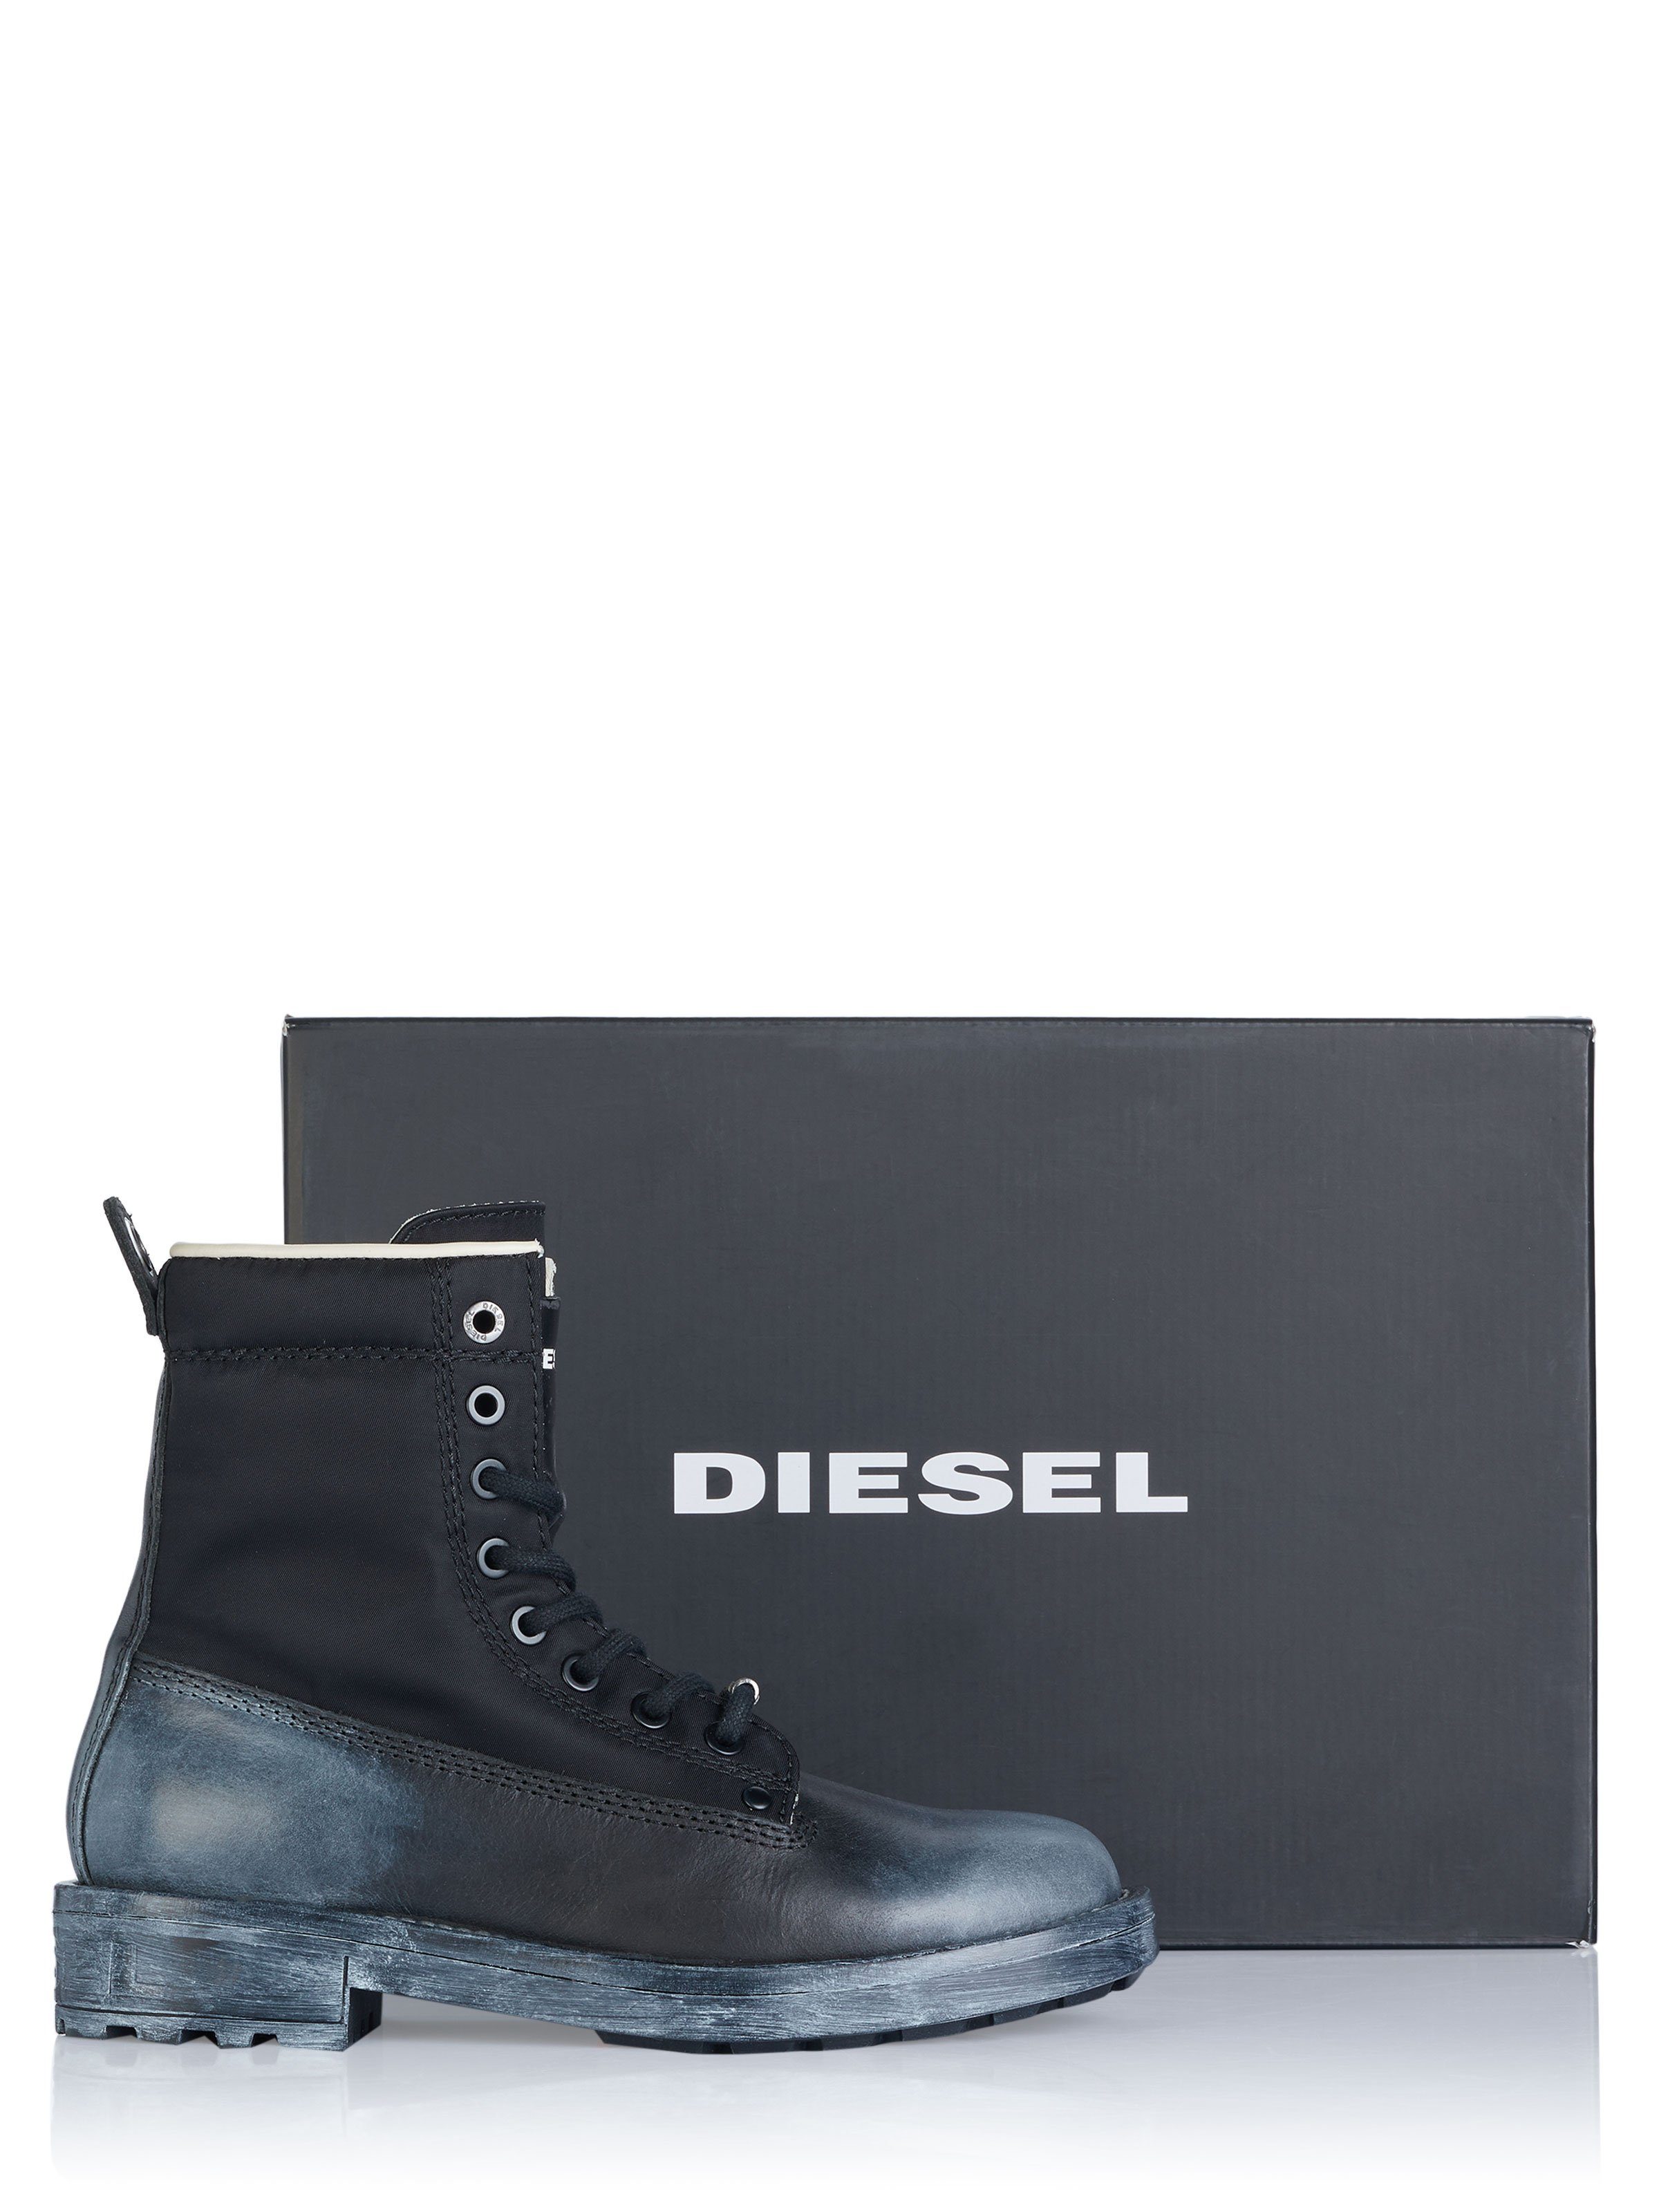 Diesel Diesel Ankleboots Stiefel